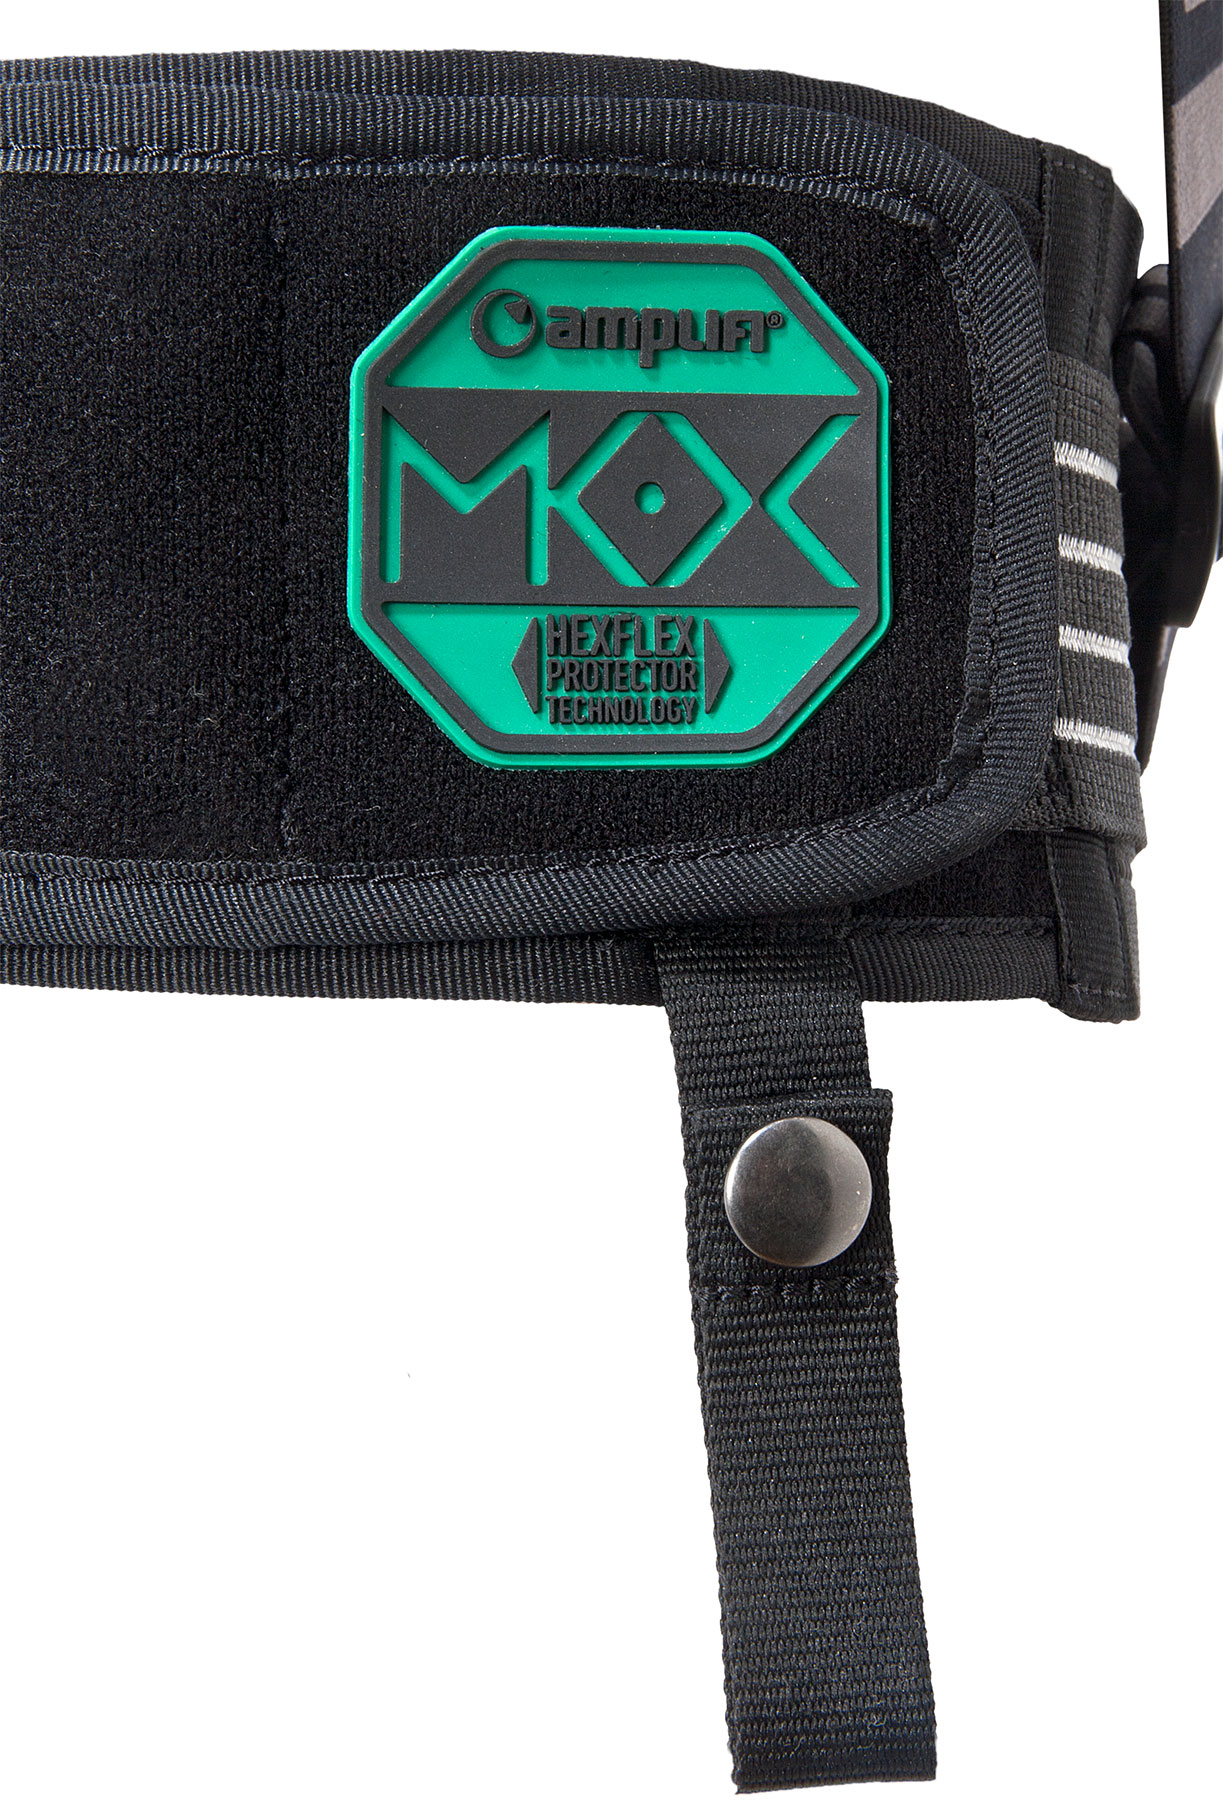 Amplifi MKX pack rugbeschermer black